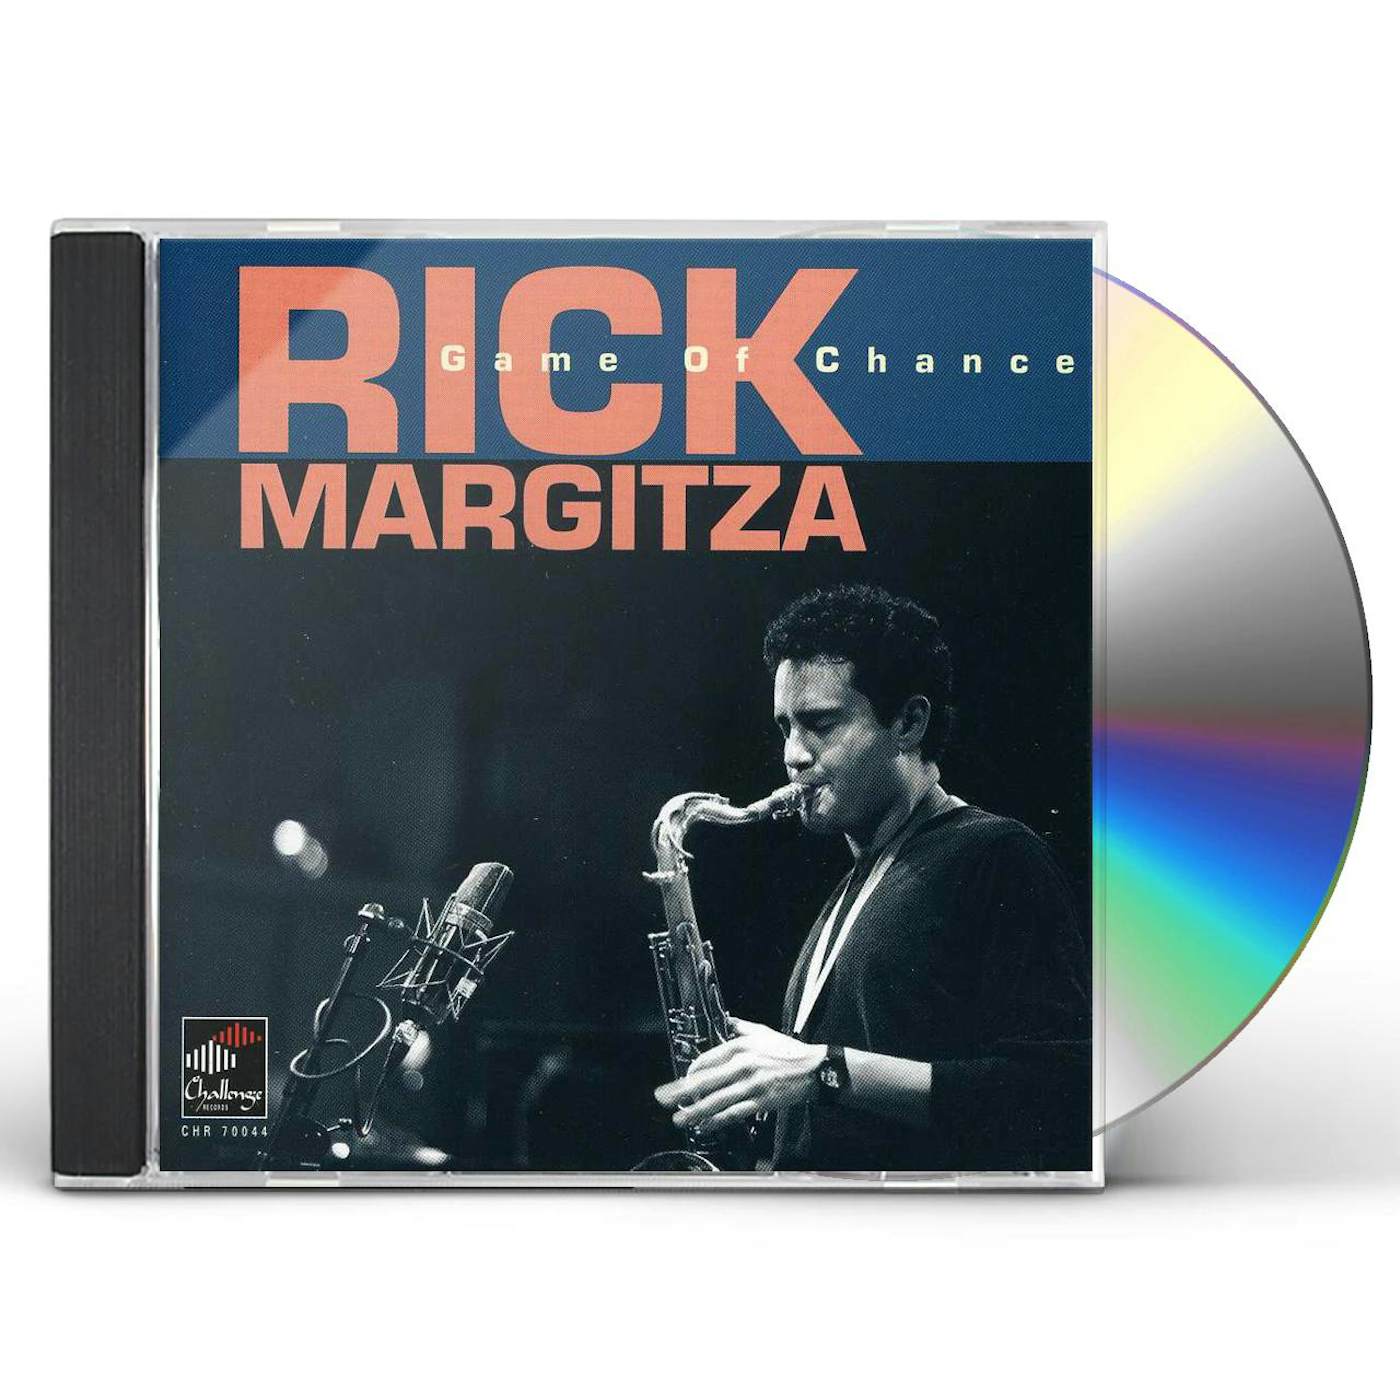 Rick Margitza GAME OF CHANCE CD